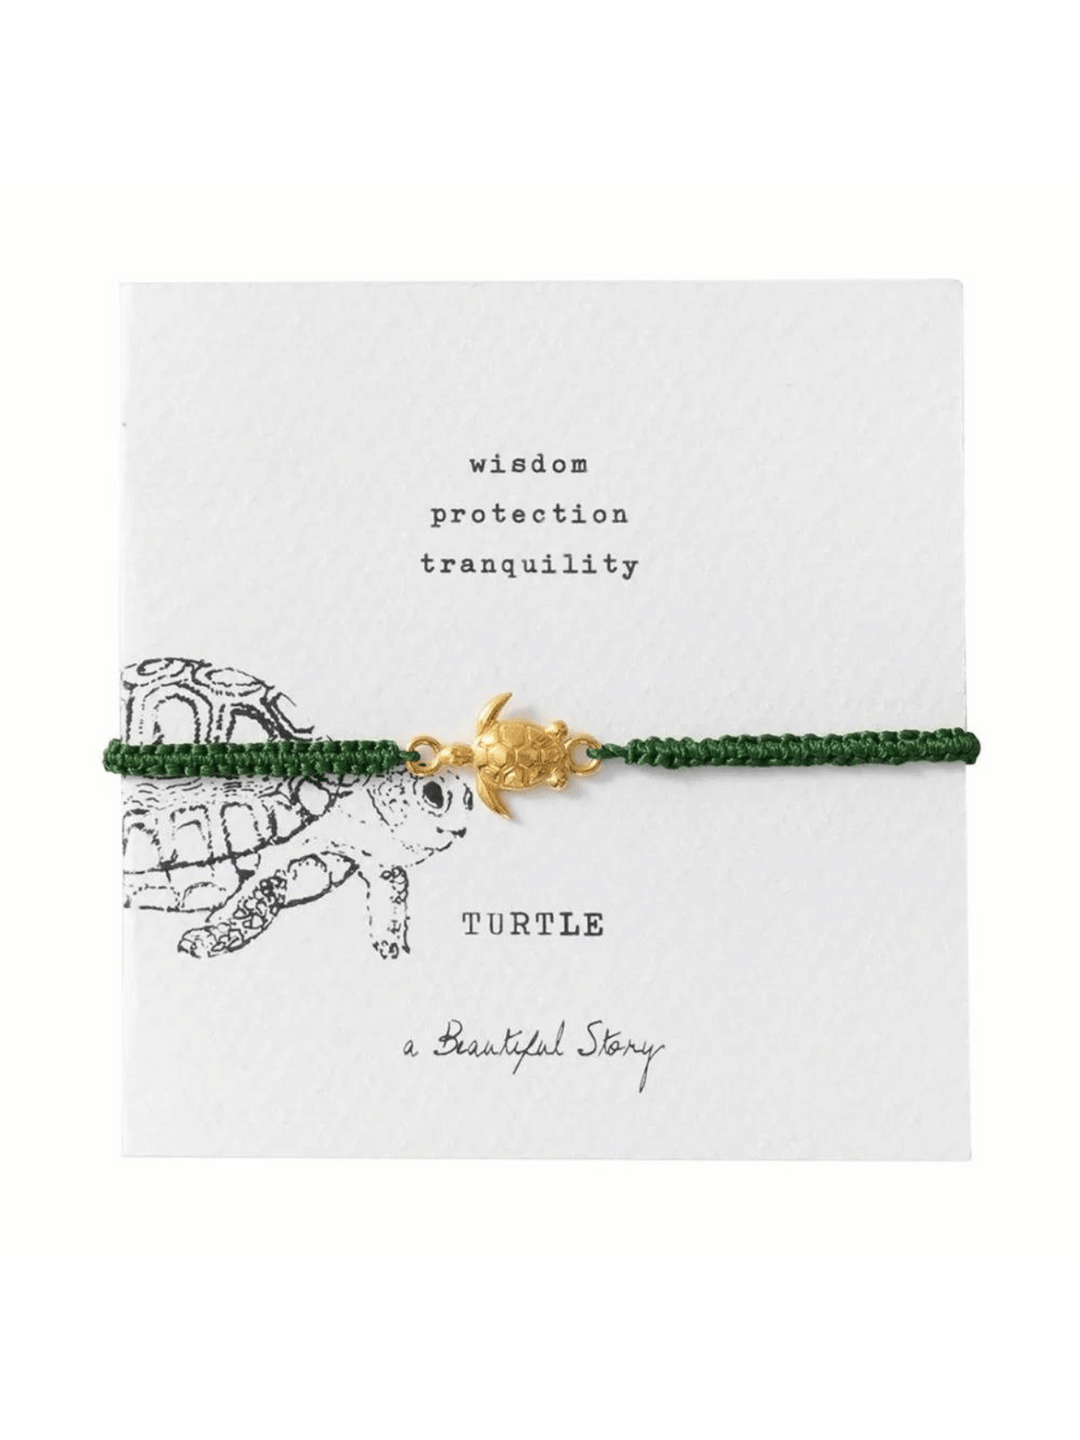 Dieses aus Baumwollfaden geknüpfte Armband trägt mittig platziert einen vergoldeten Schildkröte Anhänger. Der Anhänger ist in traditioneller Sandgusstechnik gefertigt. Das Armband ist verstellbar durch einen Schiebeknoten.